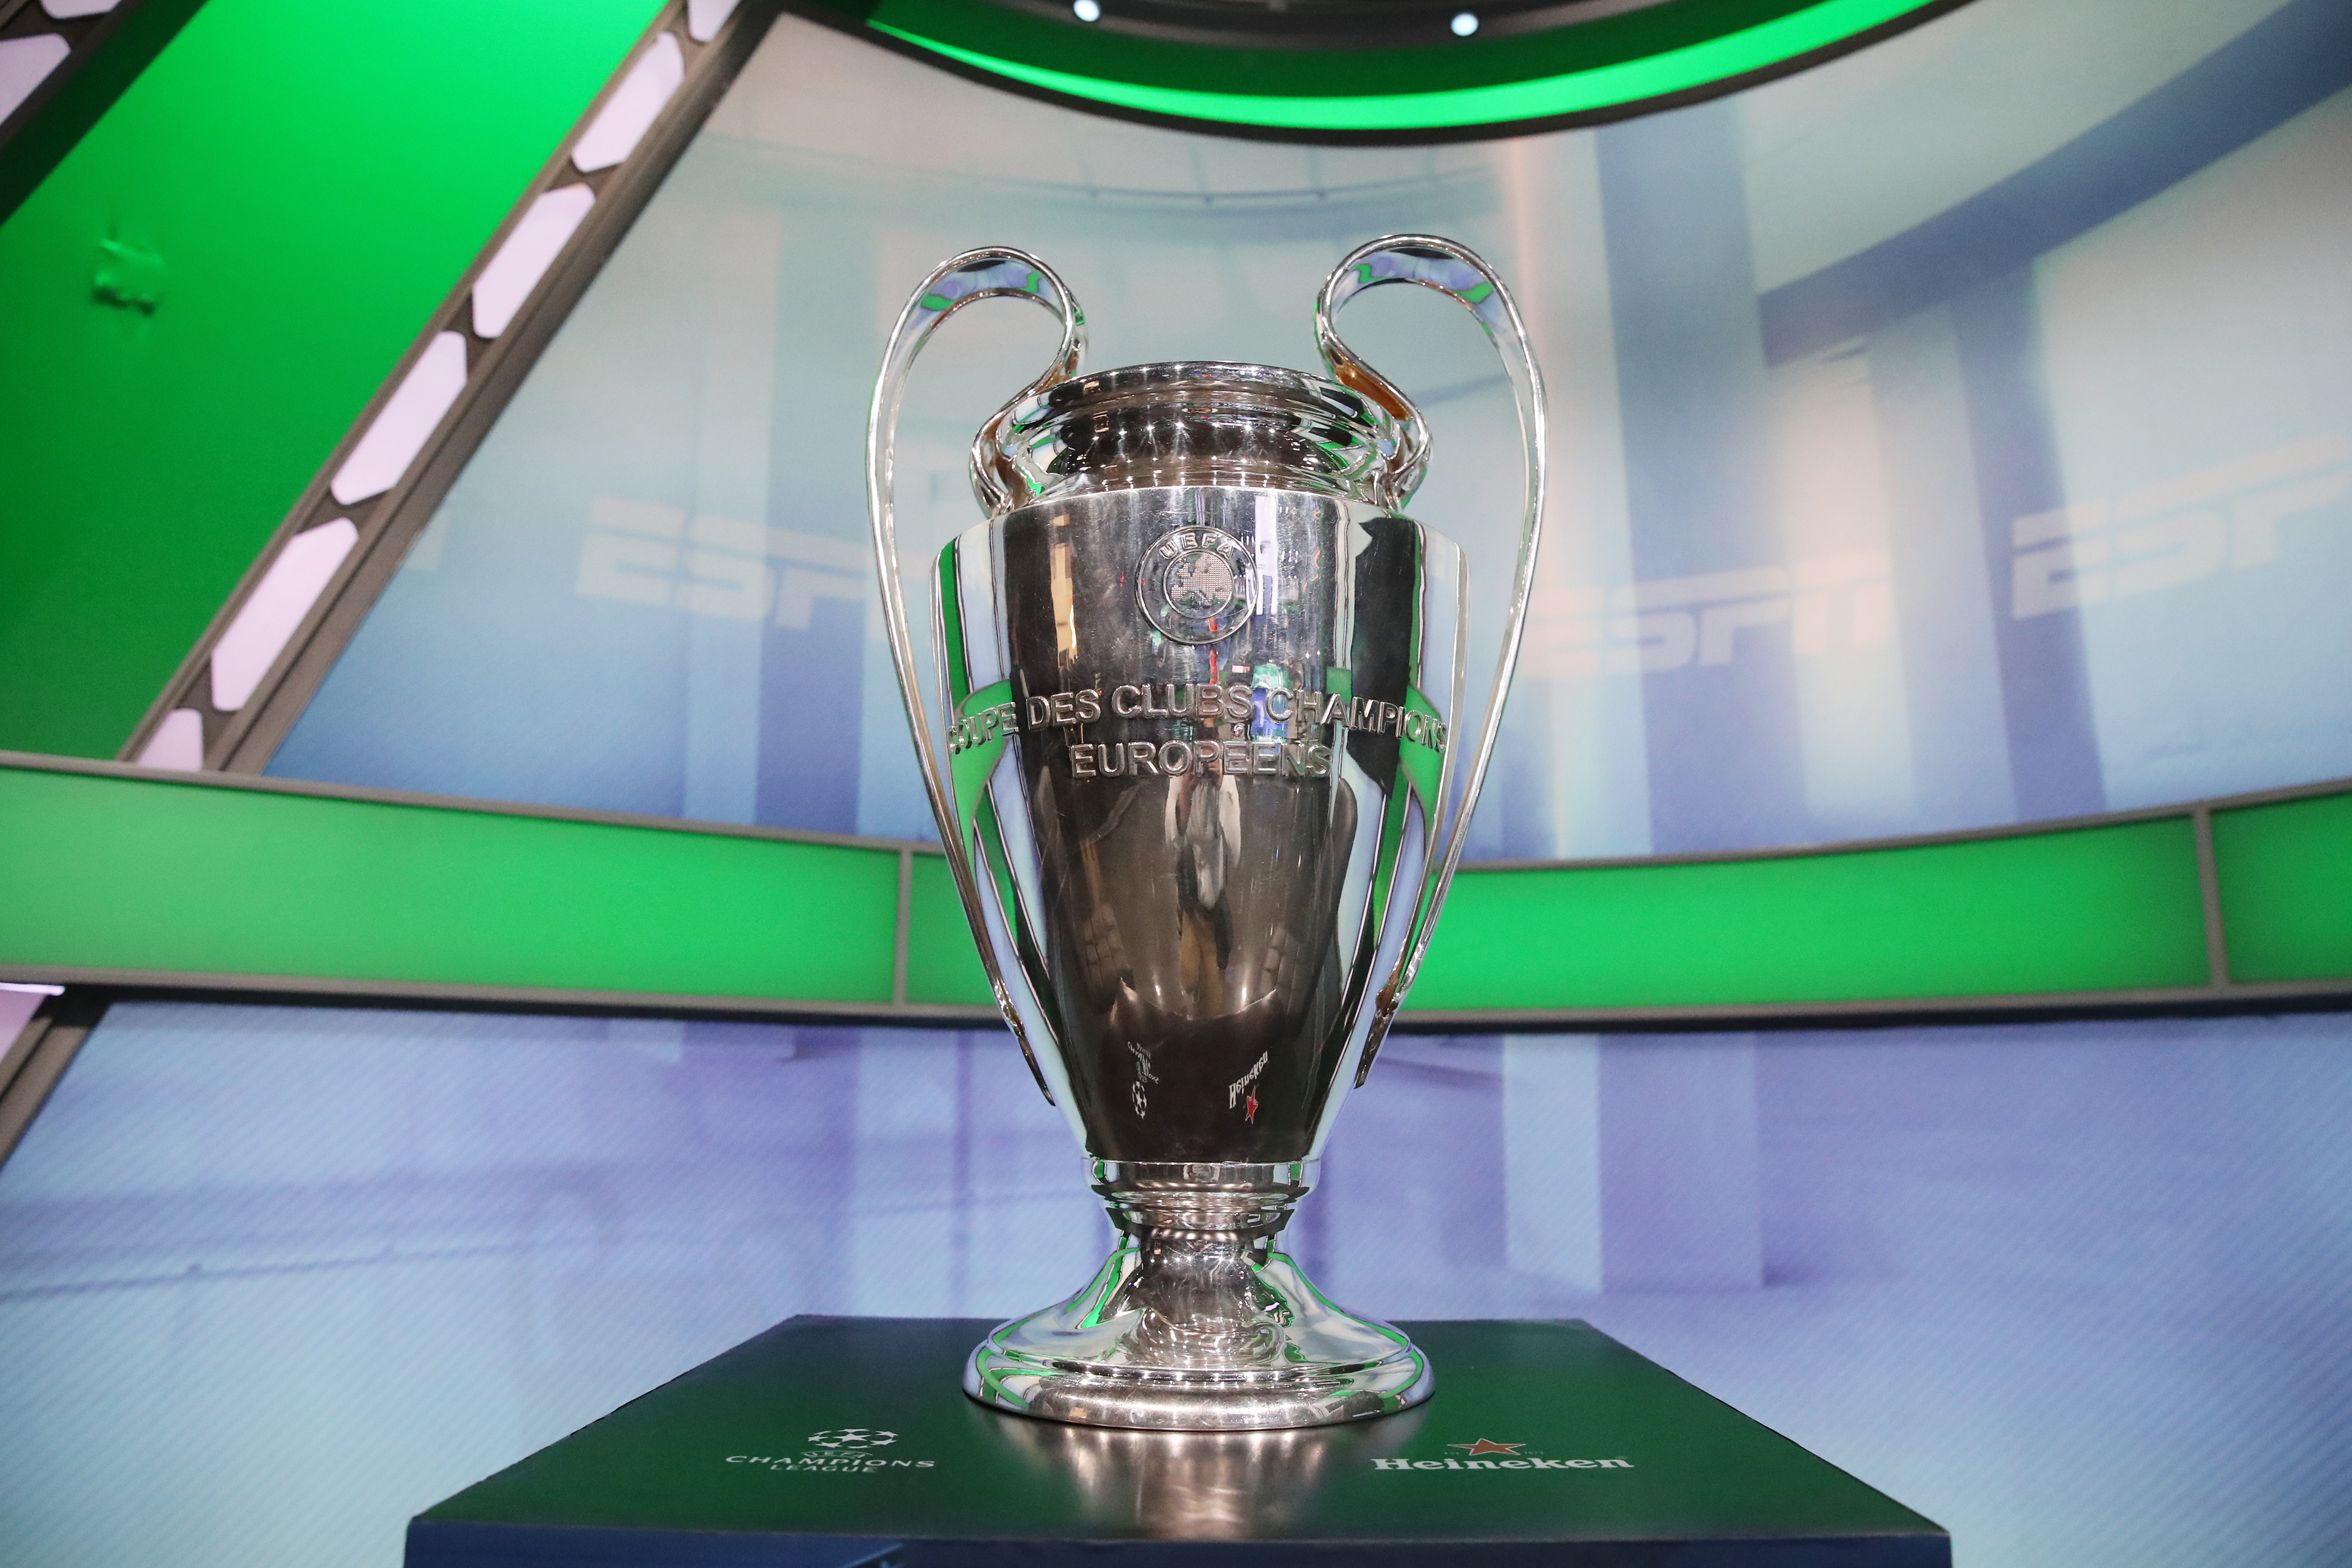 Cuánto pesa el trofeo de la Champions League y por qué le llaman la  'Orejona'?, RESPUESTAS